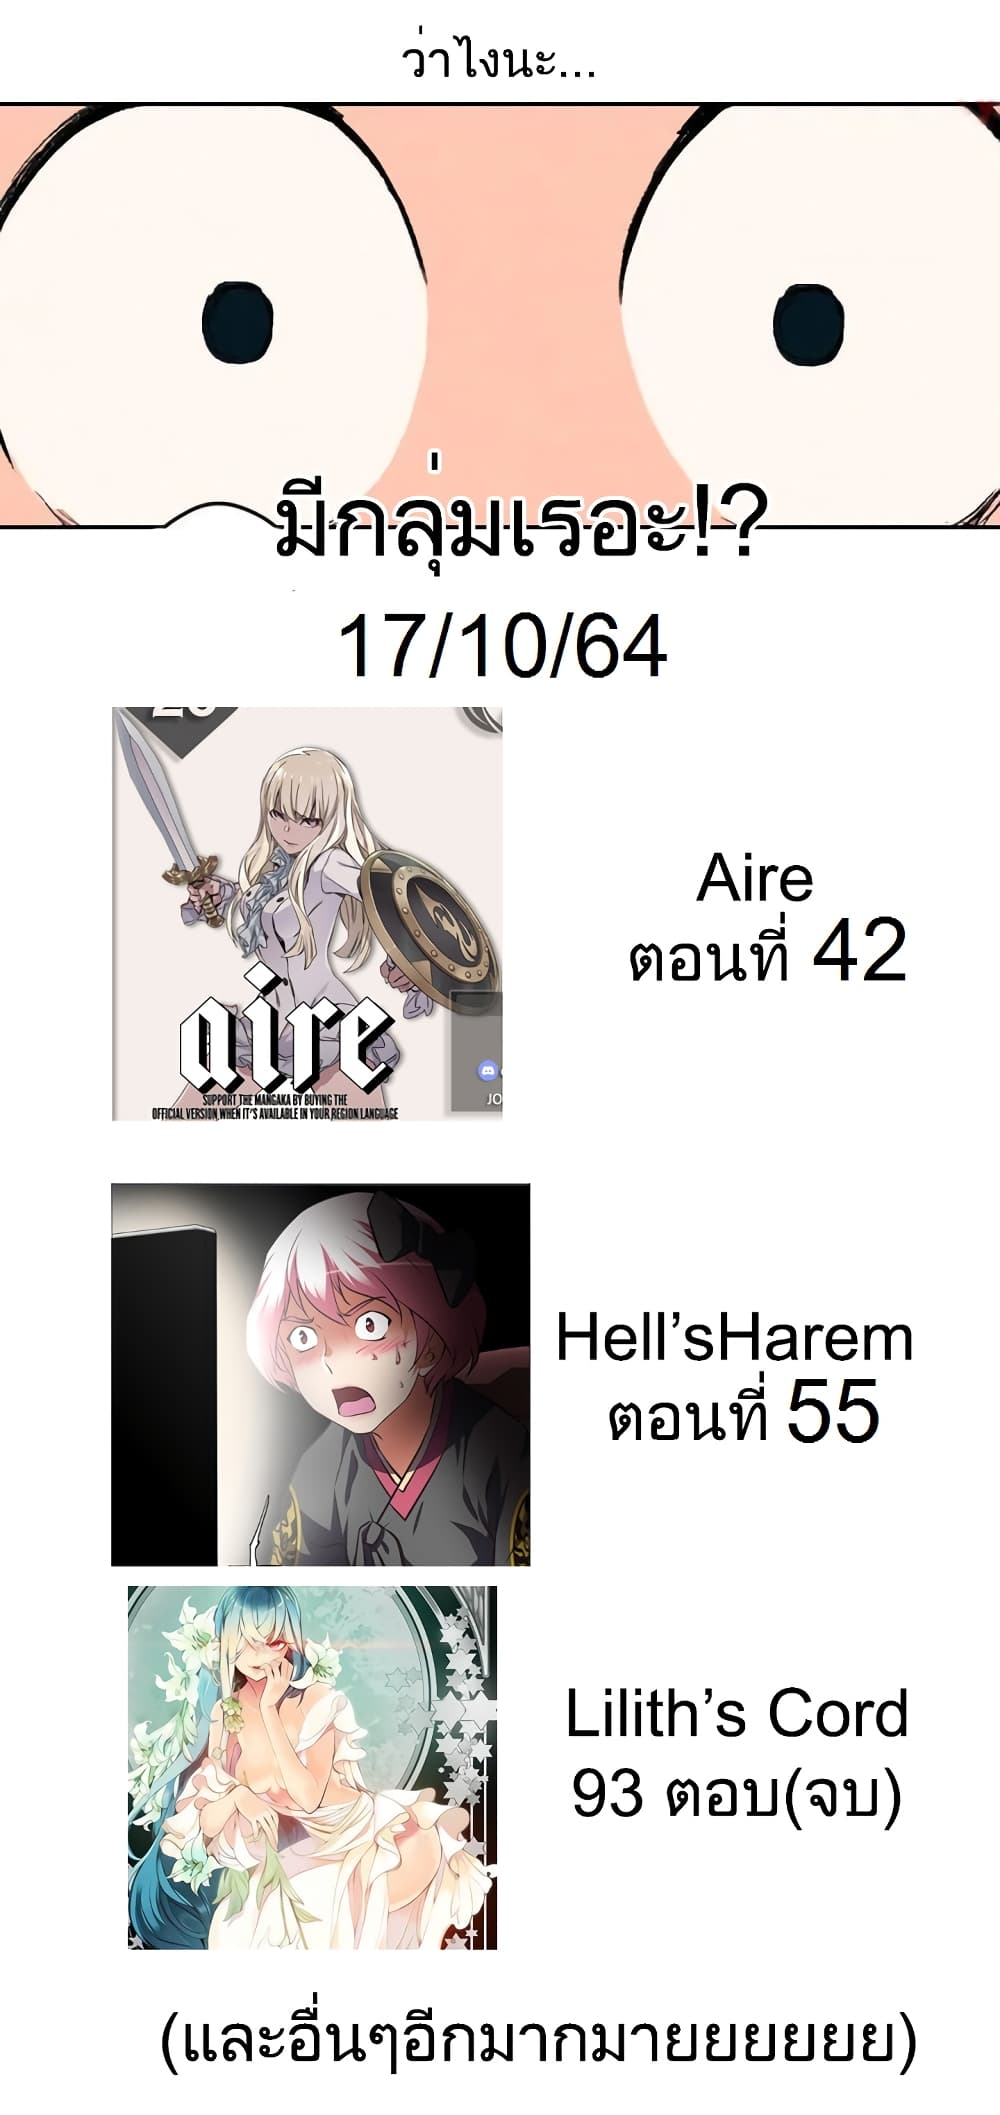 Hell's Harem 36 (10)